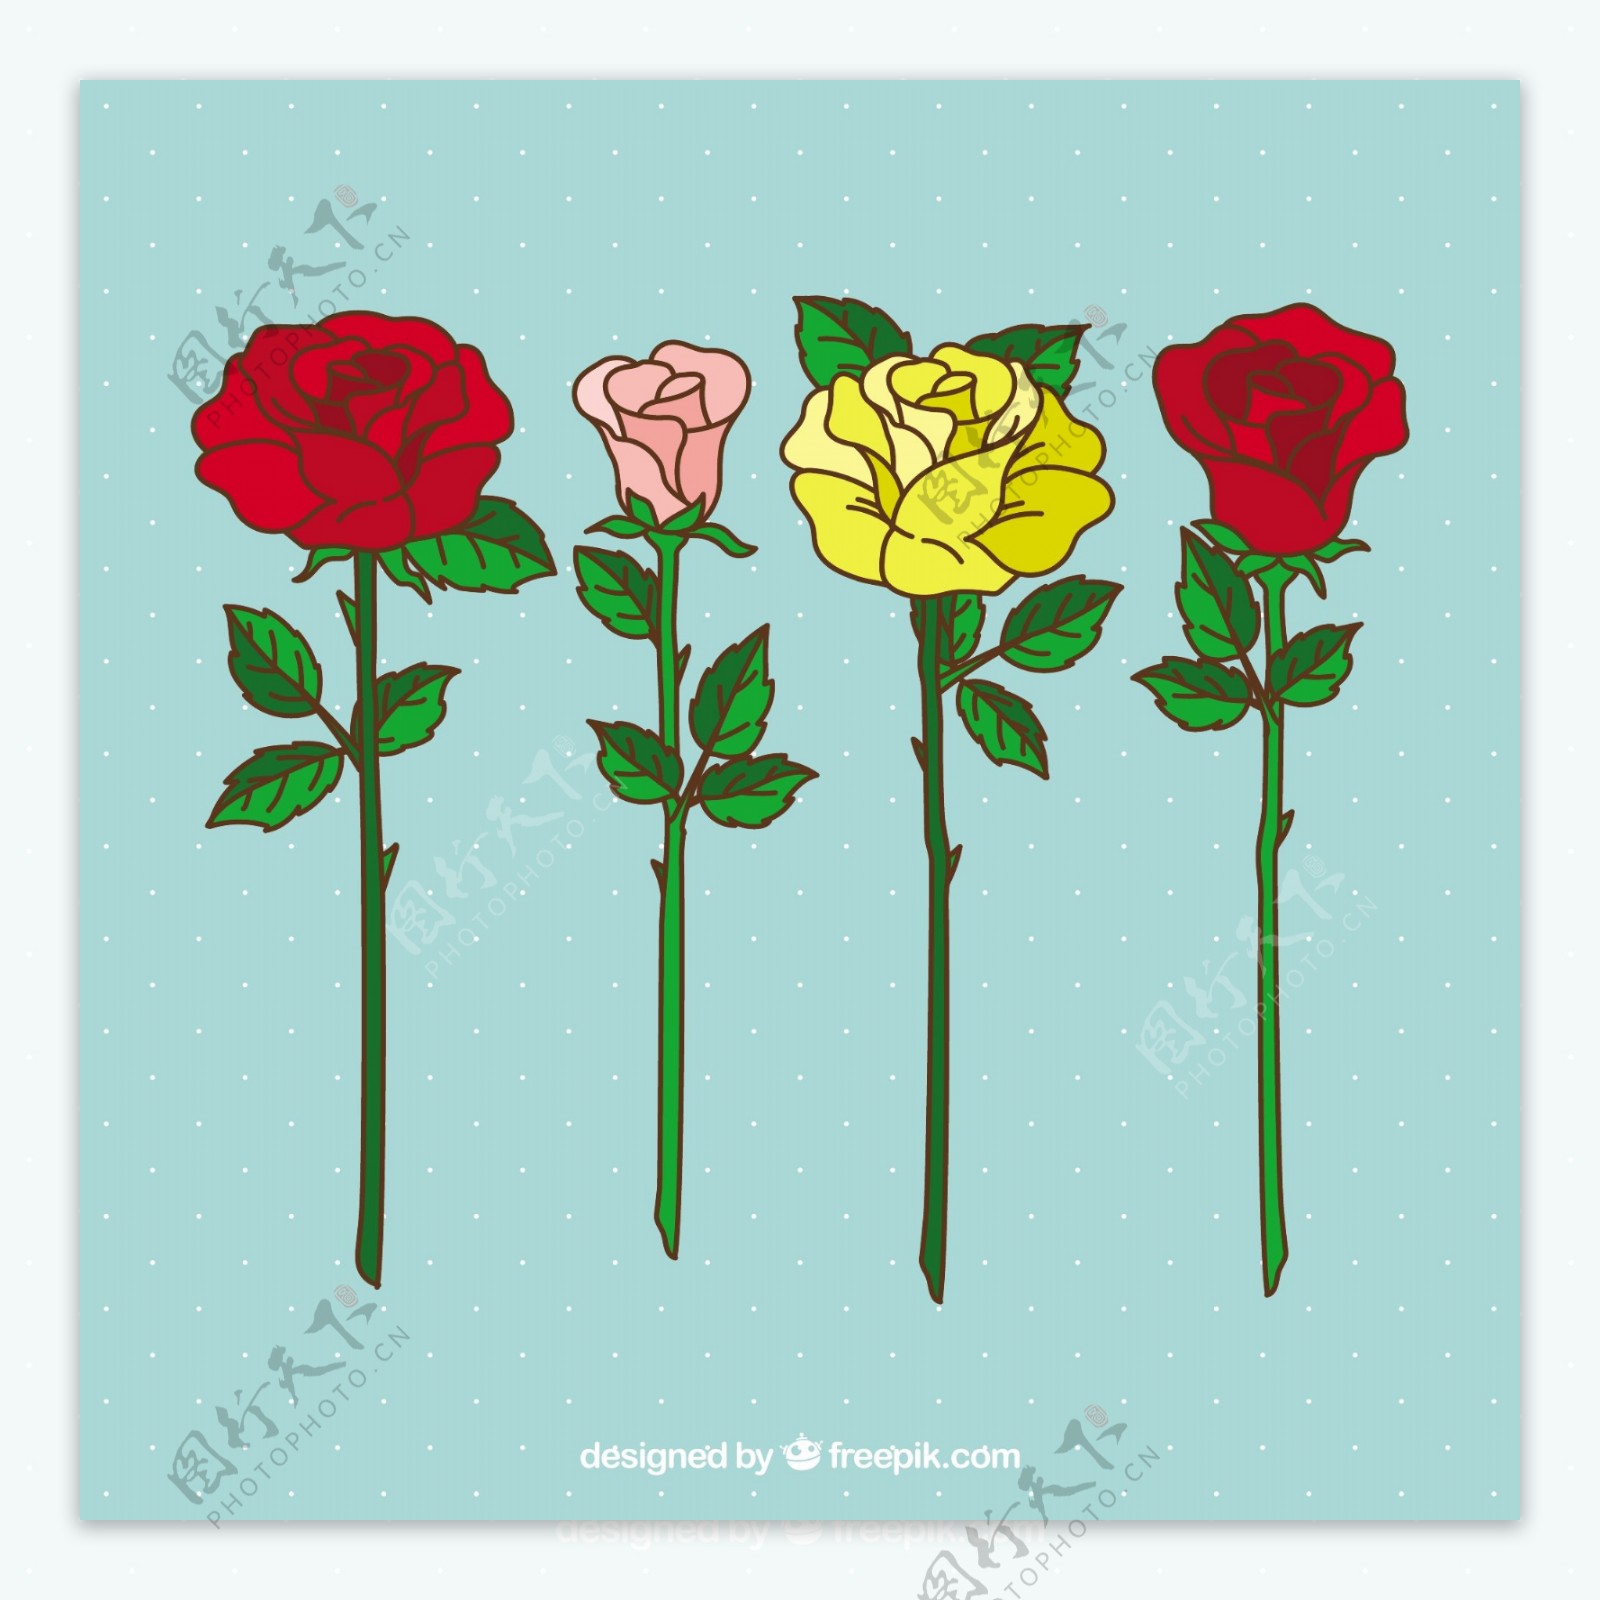 漂亮的手绘彩色玫瑰